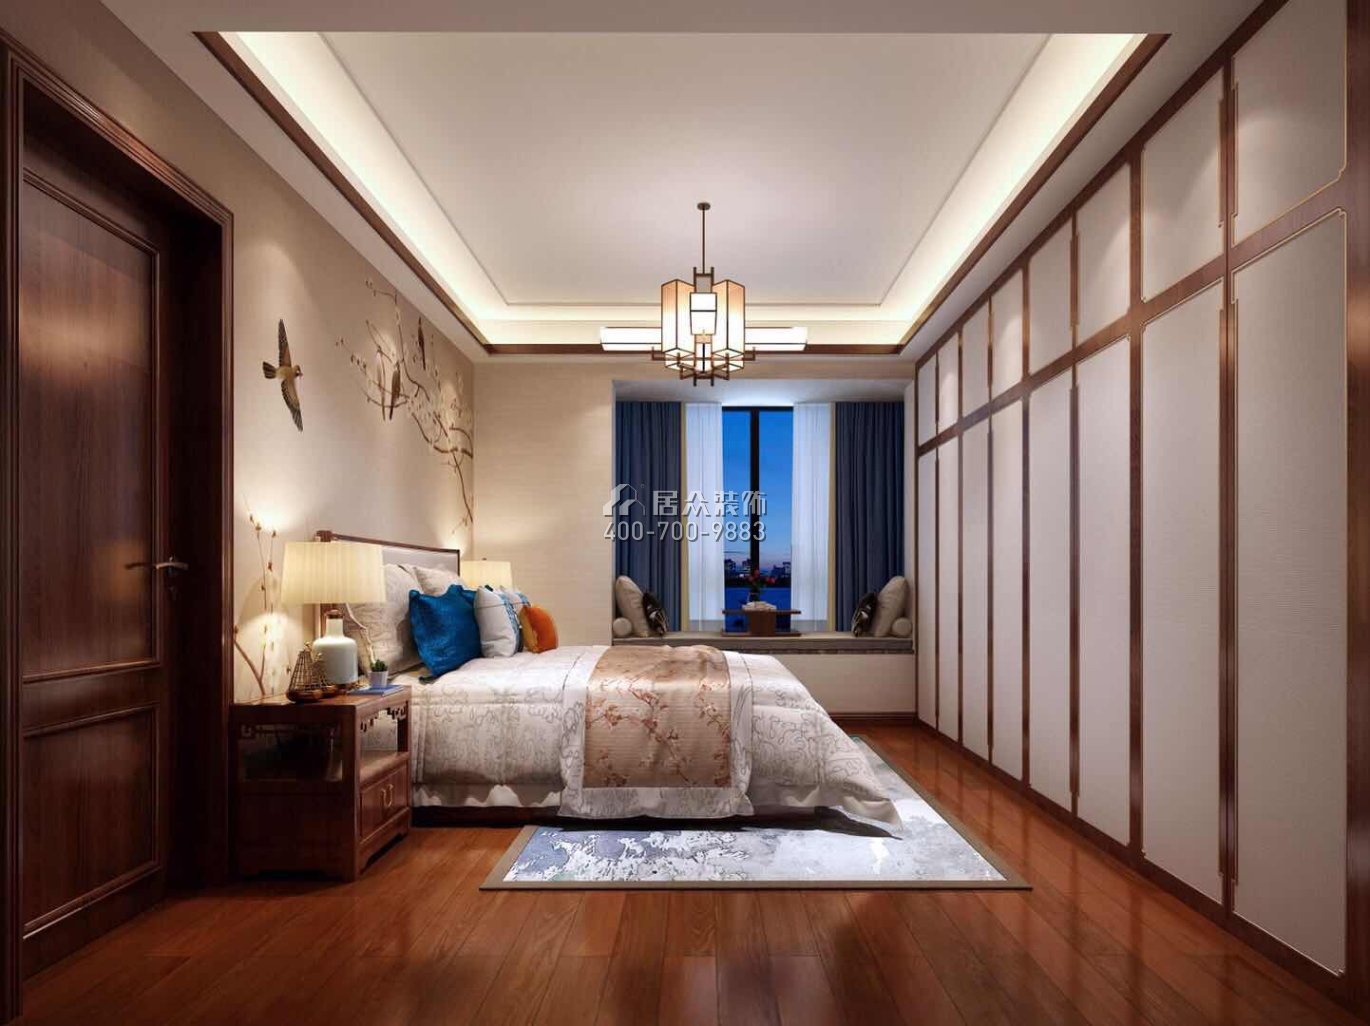 西海湾花园138平方米中式风格平层户型卧室装修效果图